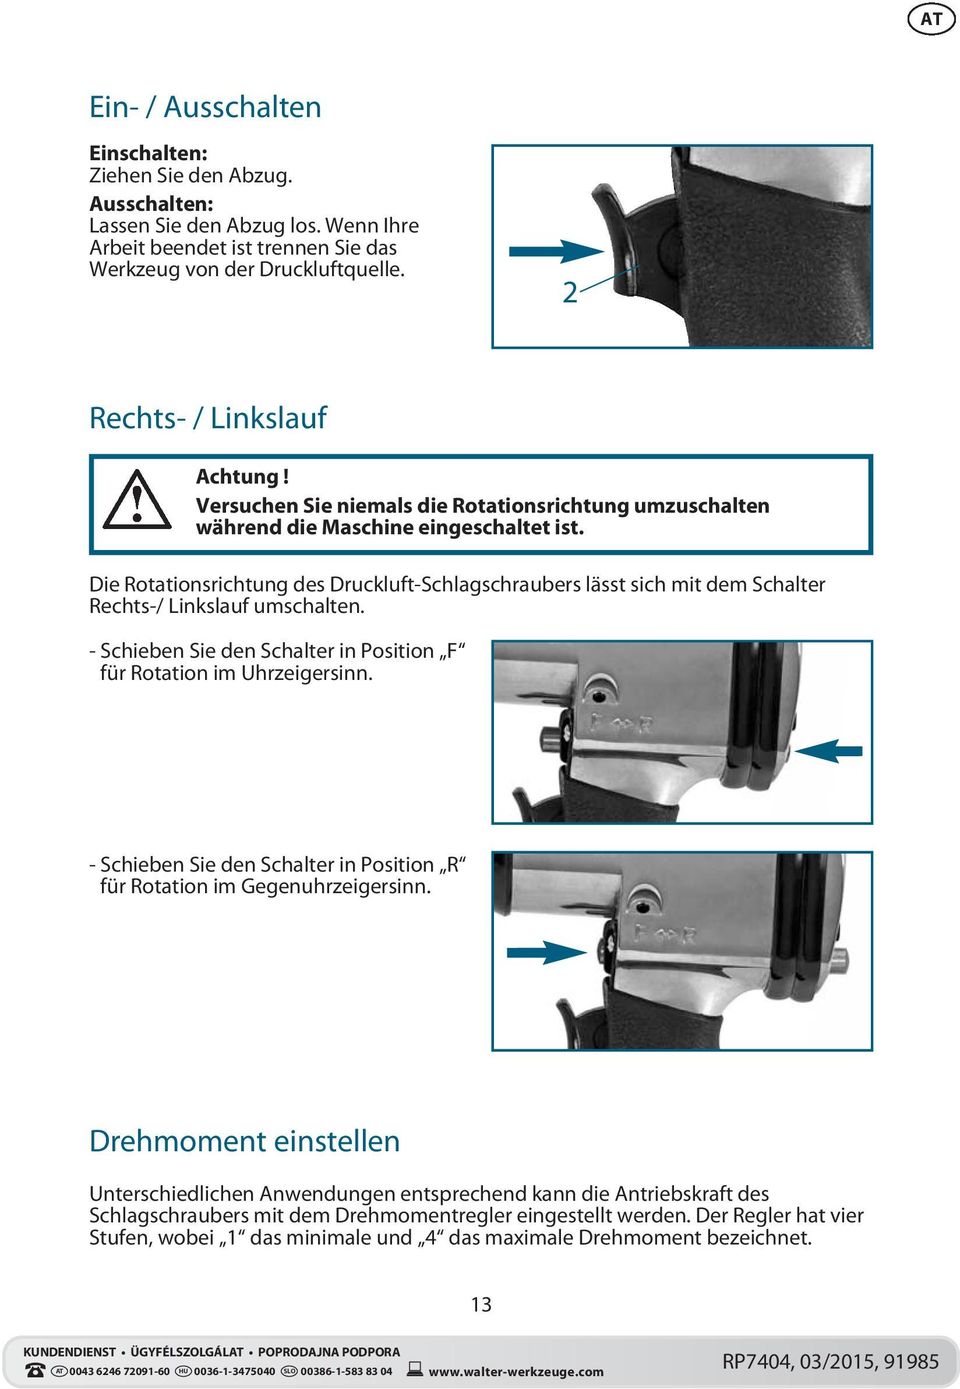 Die Rotationsrichtung des Druckluft-Schlagschraubers lässt sich mit dem Schalter Rechts-/ Linkslauf umschalten. - Schieben Sie den Schalter in Position F für Rotation im Uhrzeigersinn.